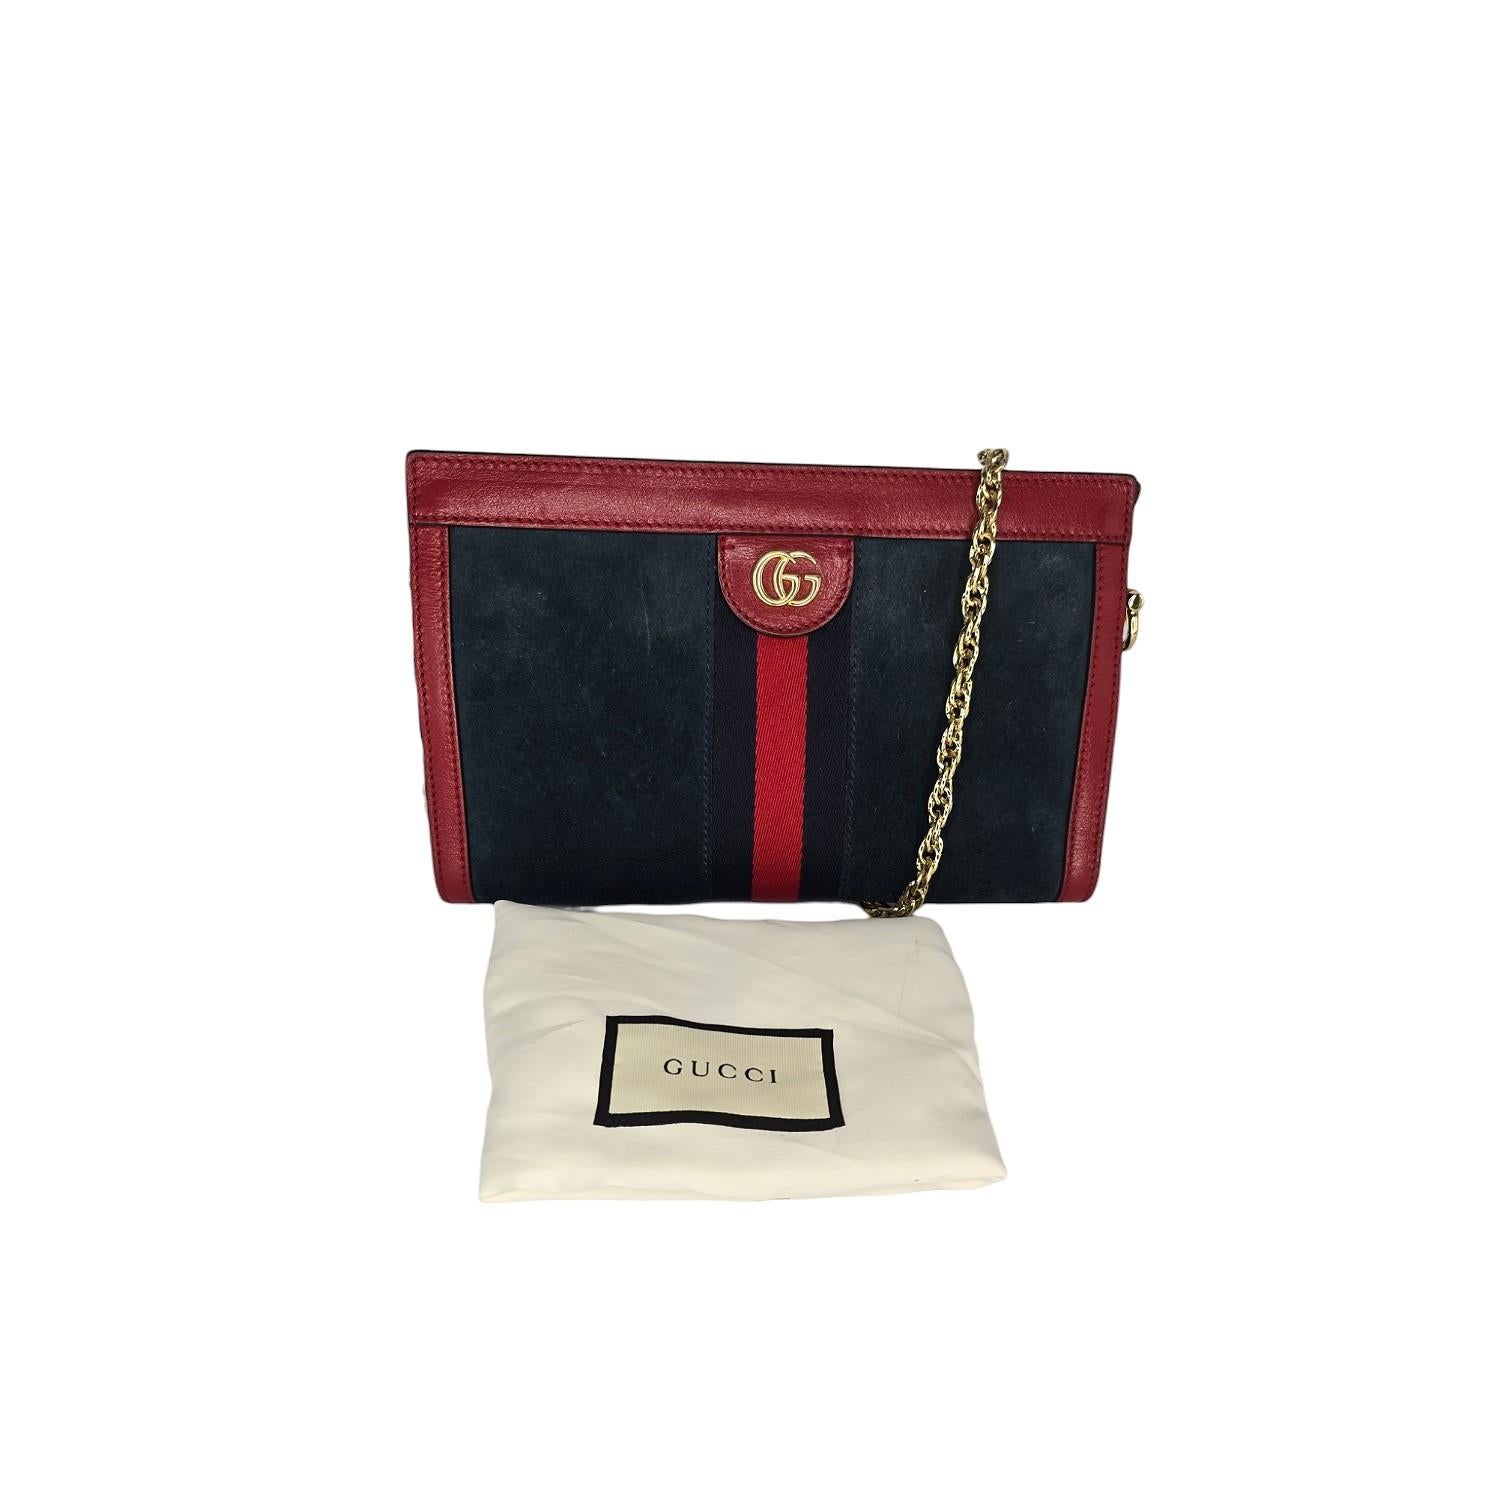 Mit ihrem eleganten und raffinierten Design ist die Gucci Ophidia Small Shoulder Bag aus Wildleder und Leder das ultimative Luxus-Accessoire. Diese in Italien aus schwarzem Wildleder und rotem Leder gefertigte Tasche verfügt über ein unterteiltes